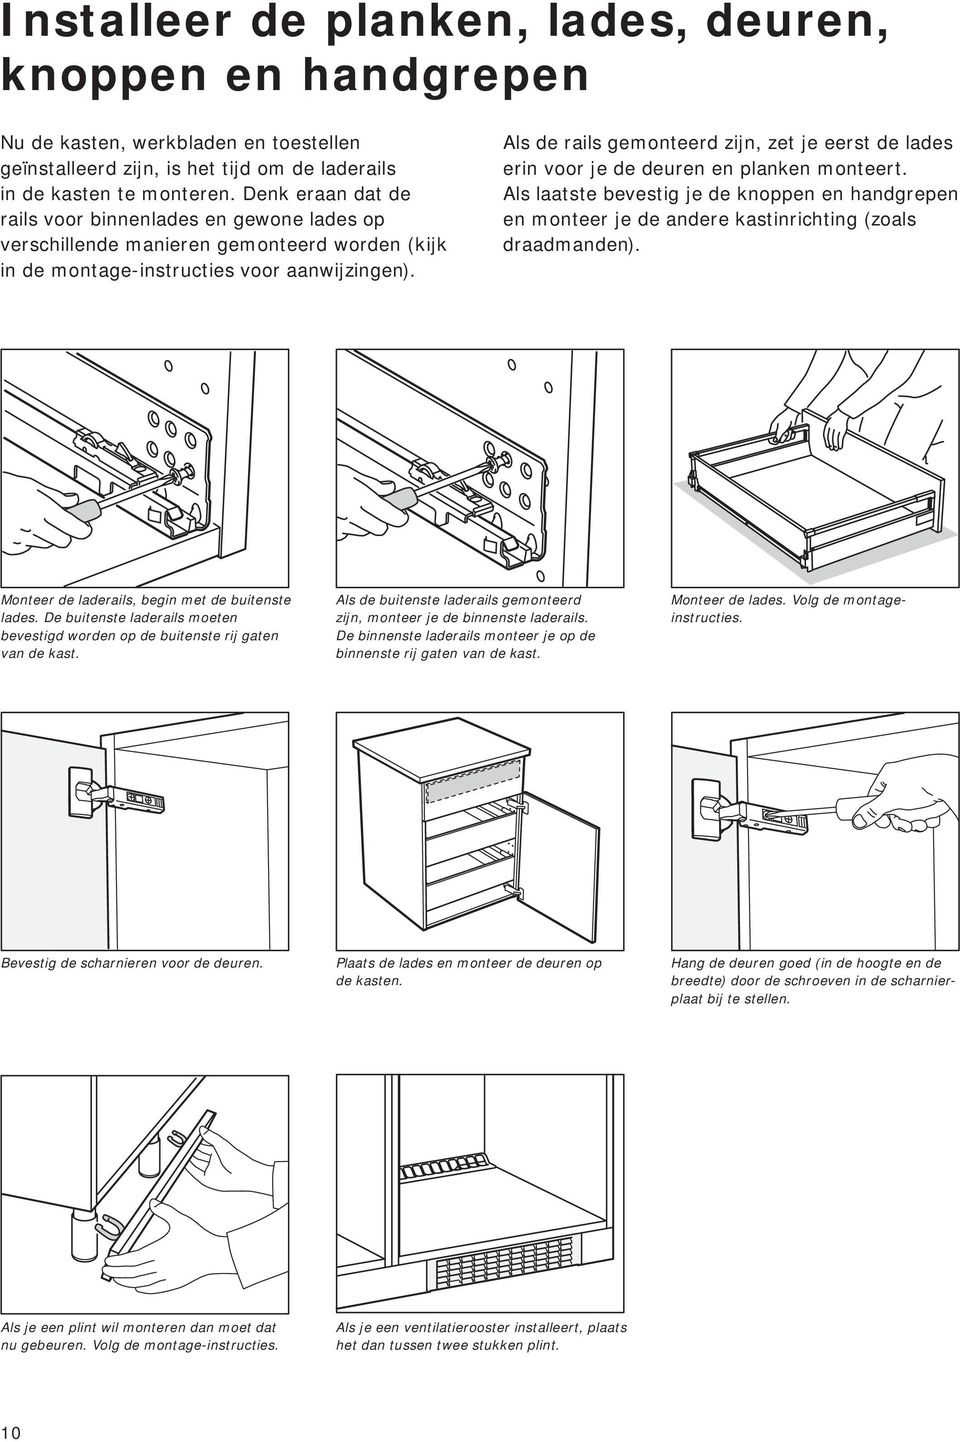 de stap voor stap handleiding voor een correcte keukeninstallatie pdf free download